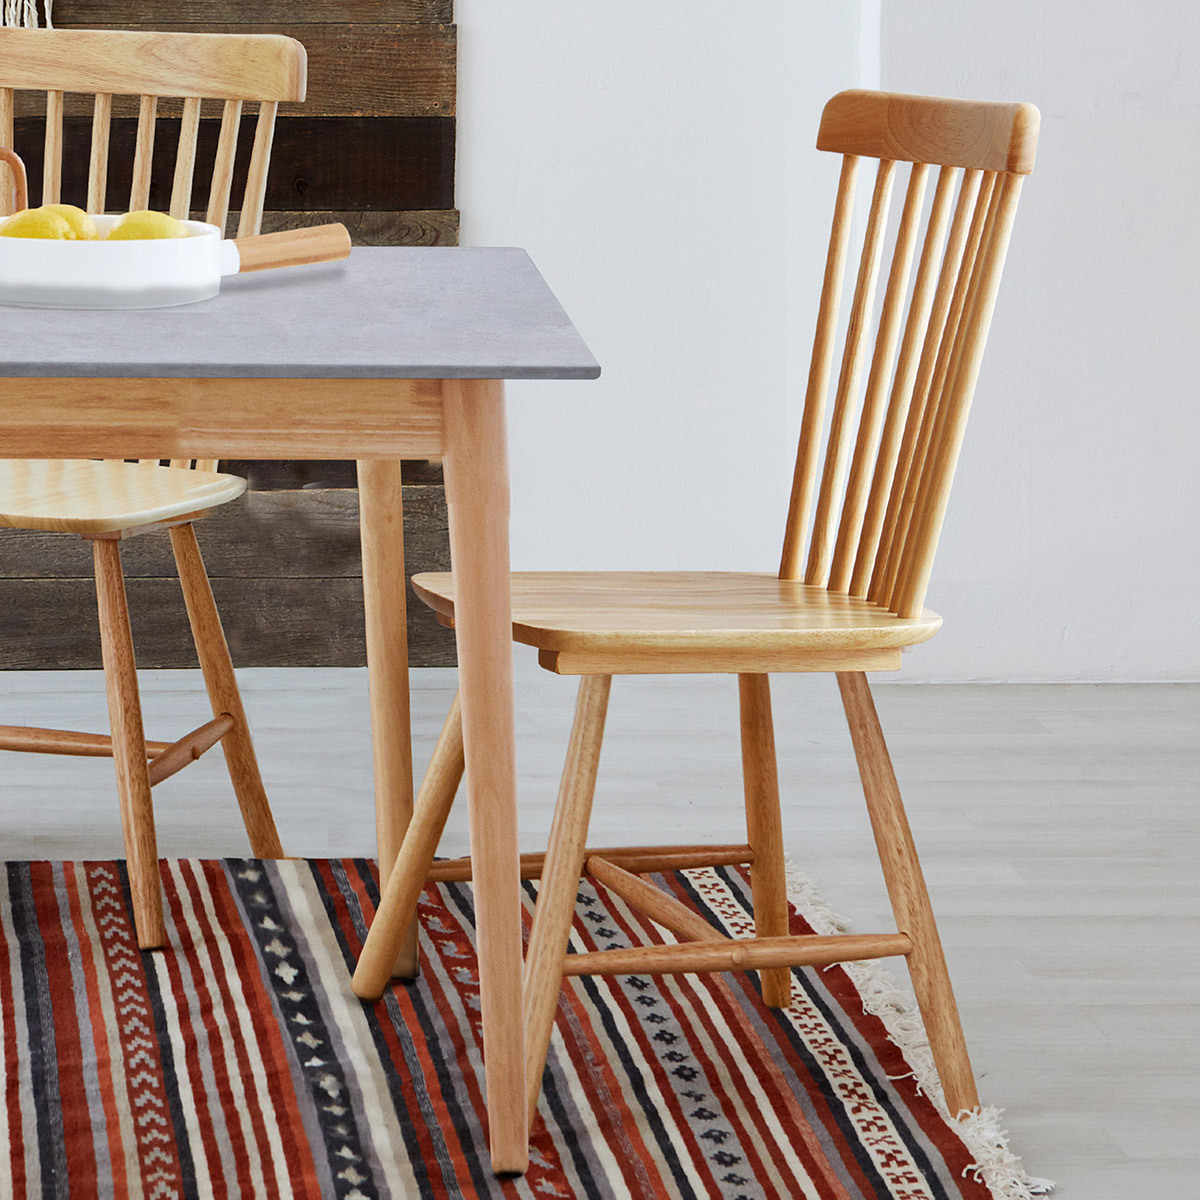 리비니아 TOTO 포세린 세라믹 4인 식탁세트 2colors - 내추럴(의자) + 그레이(세라믹 상판)